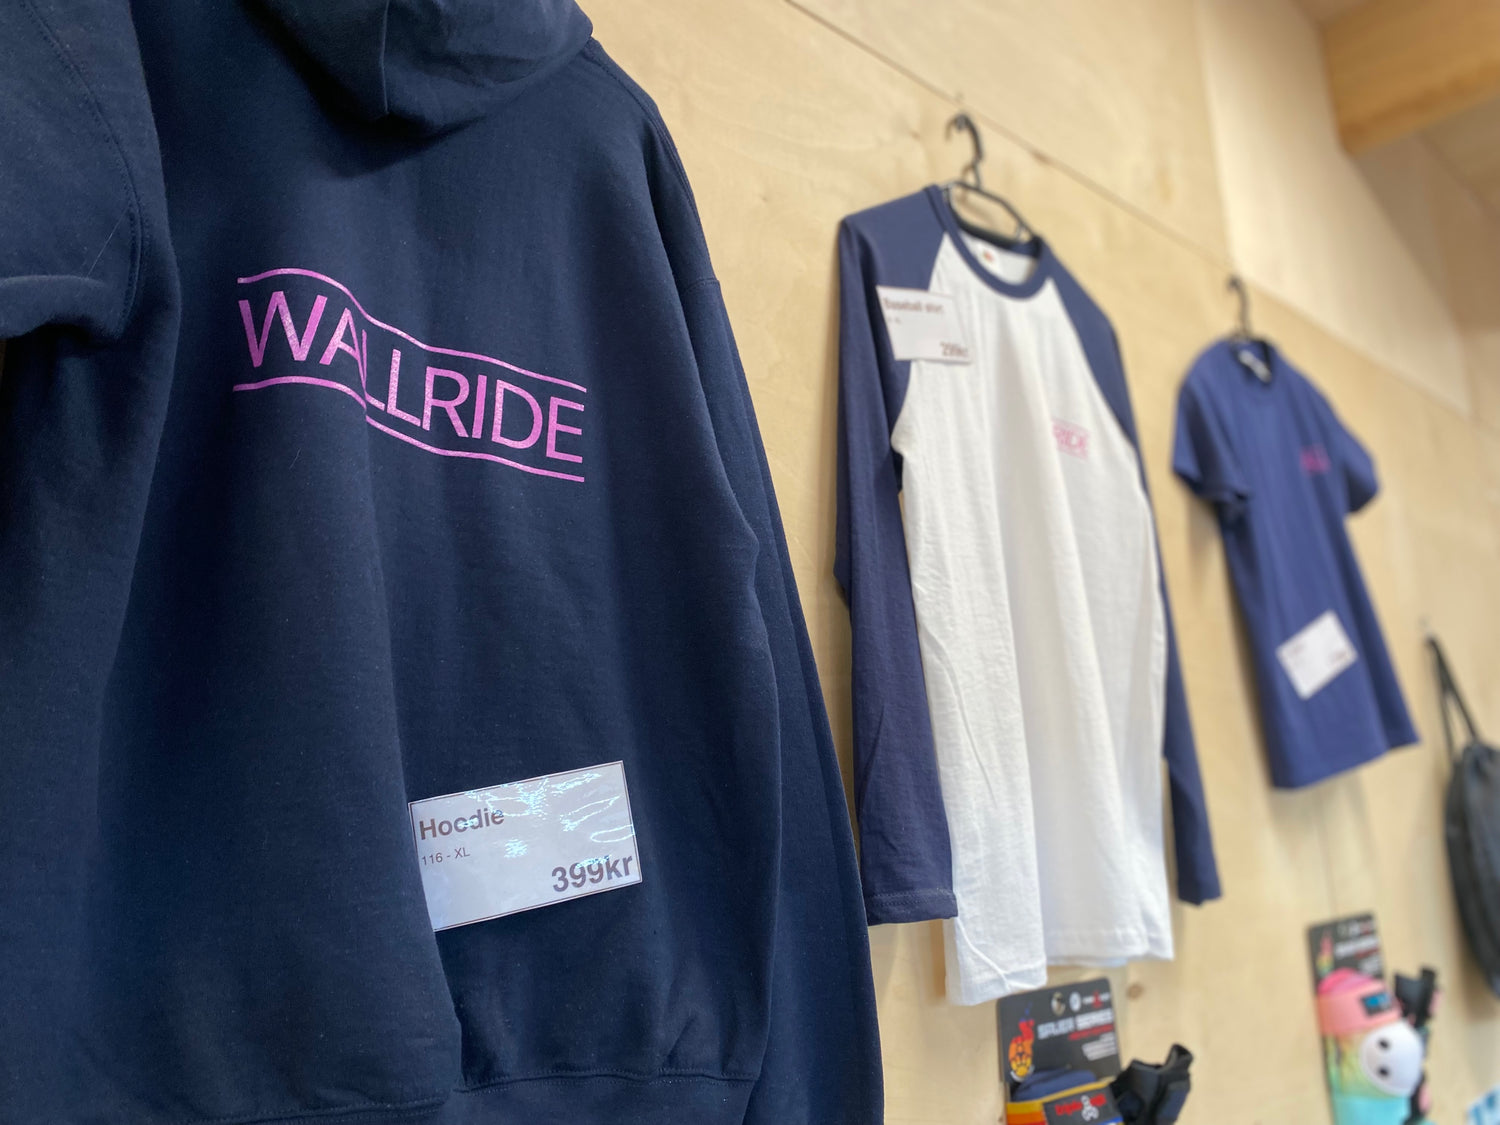 Presentkort på Wallride går att använda till varor i skatehallen